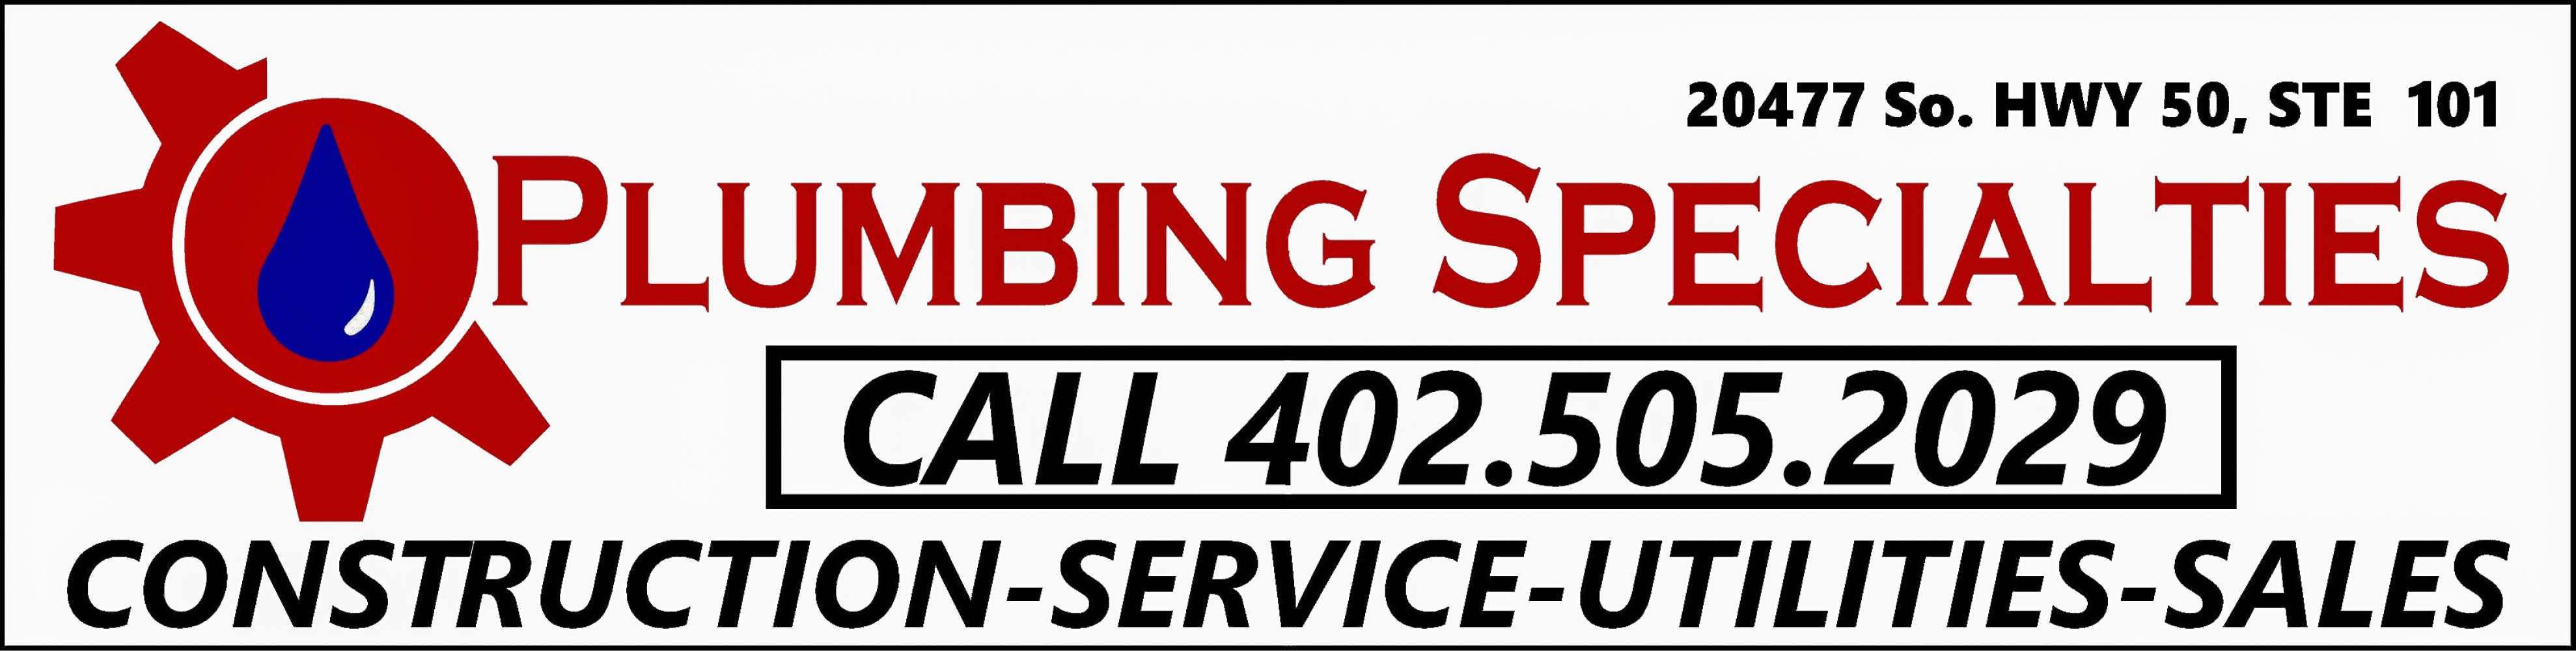 Plumbing Specialties Logo